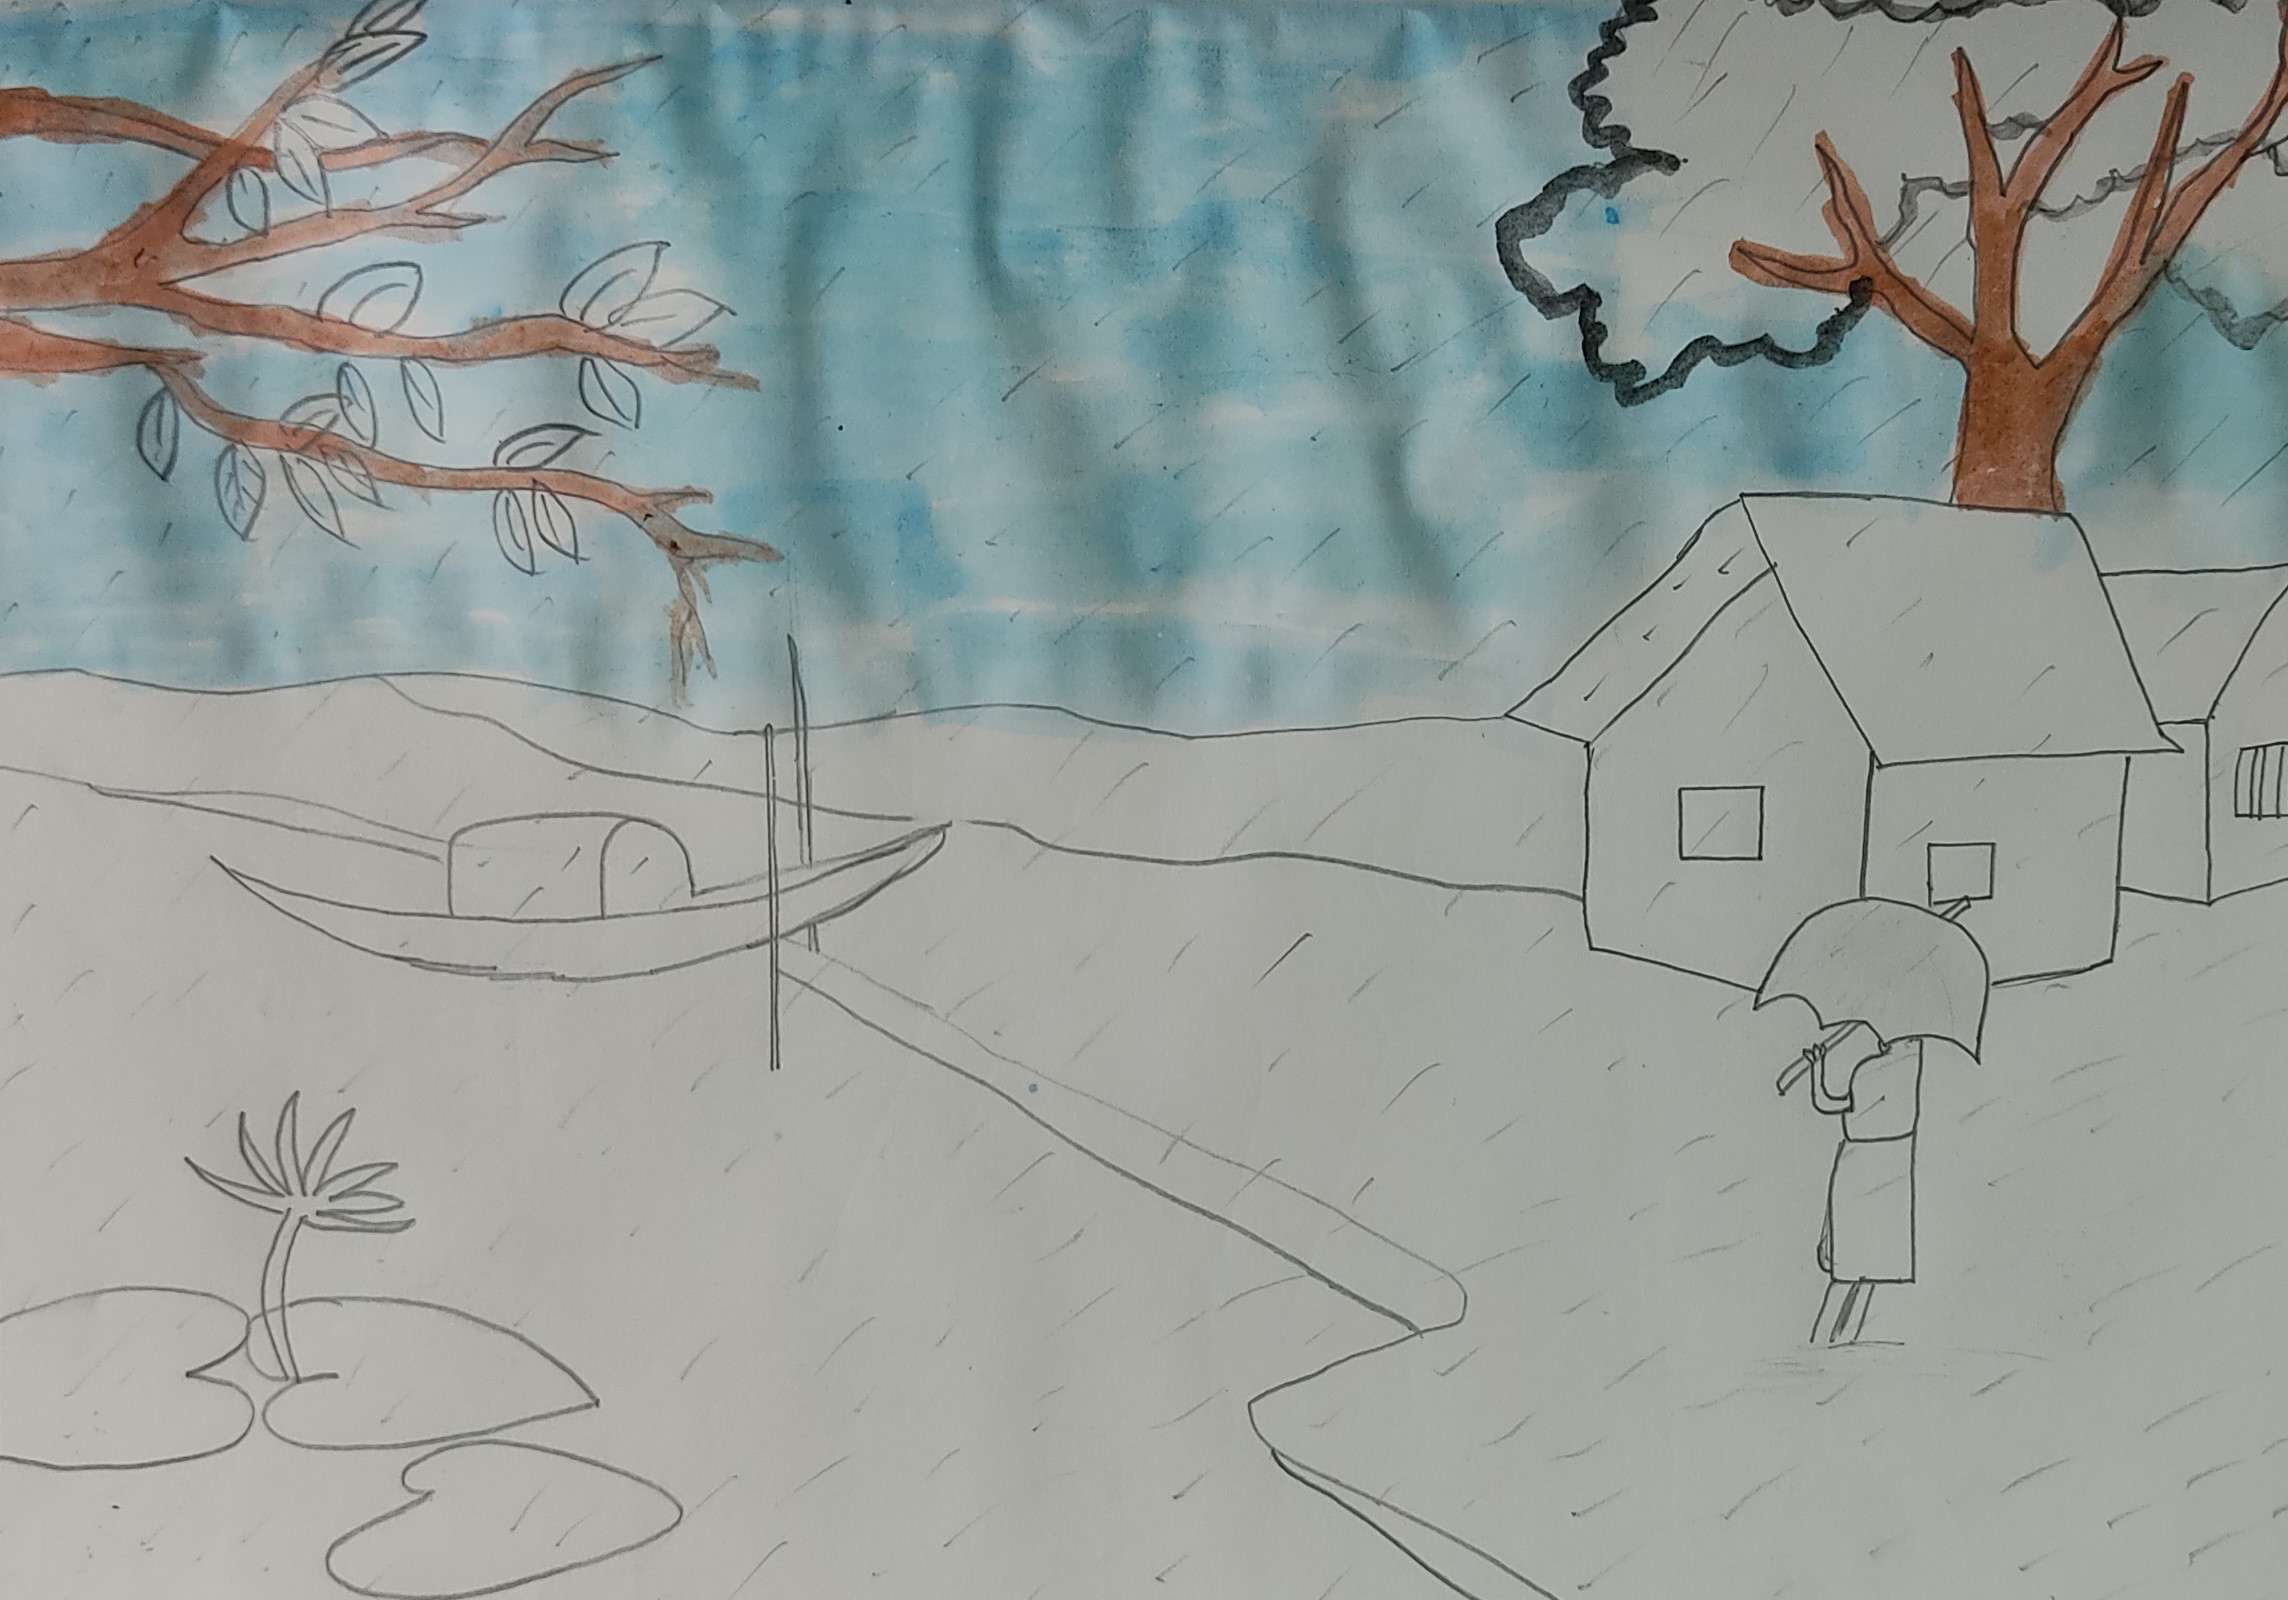 Winter Village | Landscape drawings, Village drawing, Winter drawings